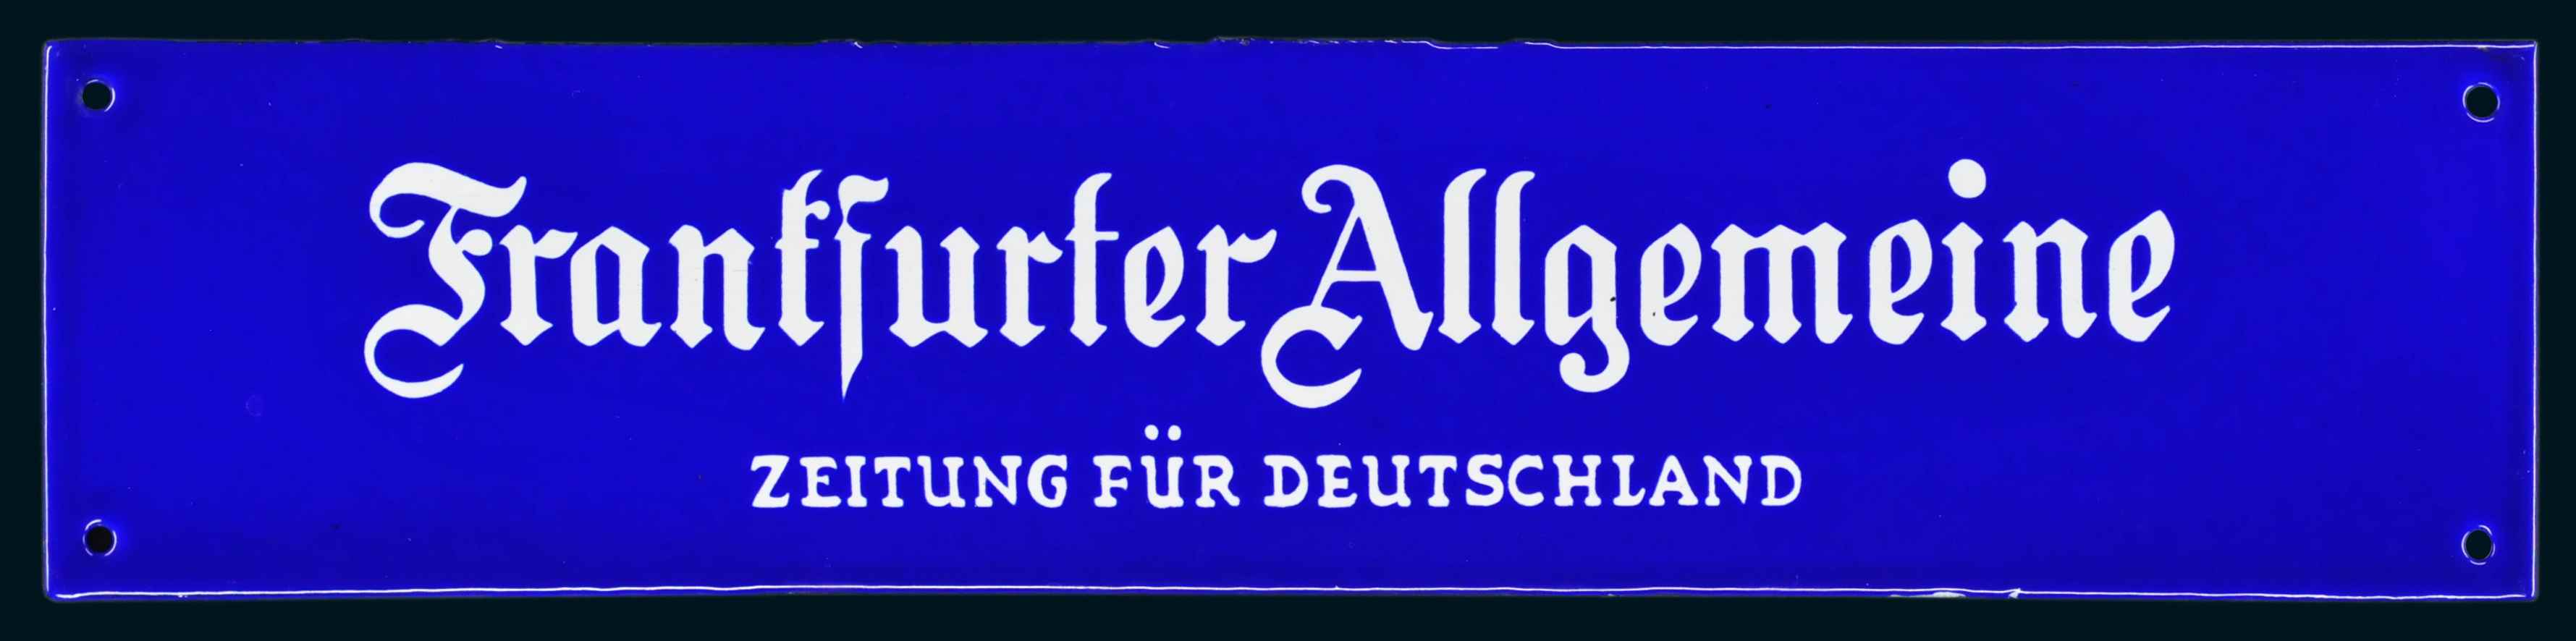 Frankfurter Allgemeine 